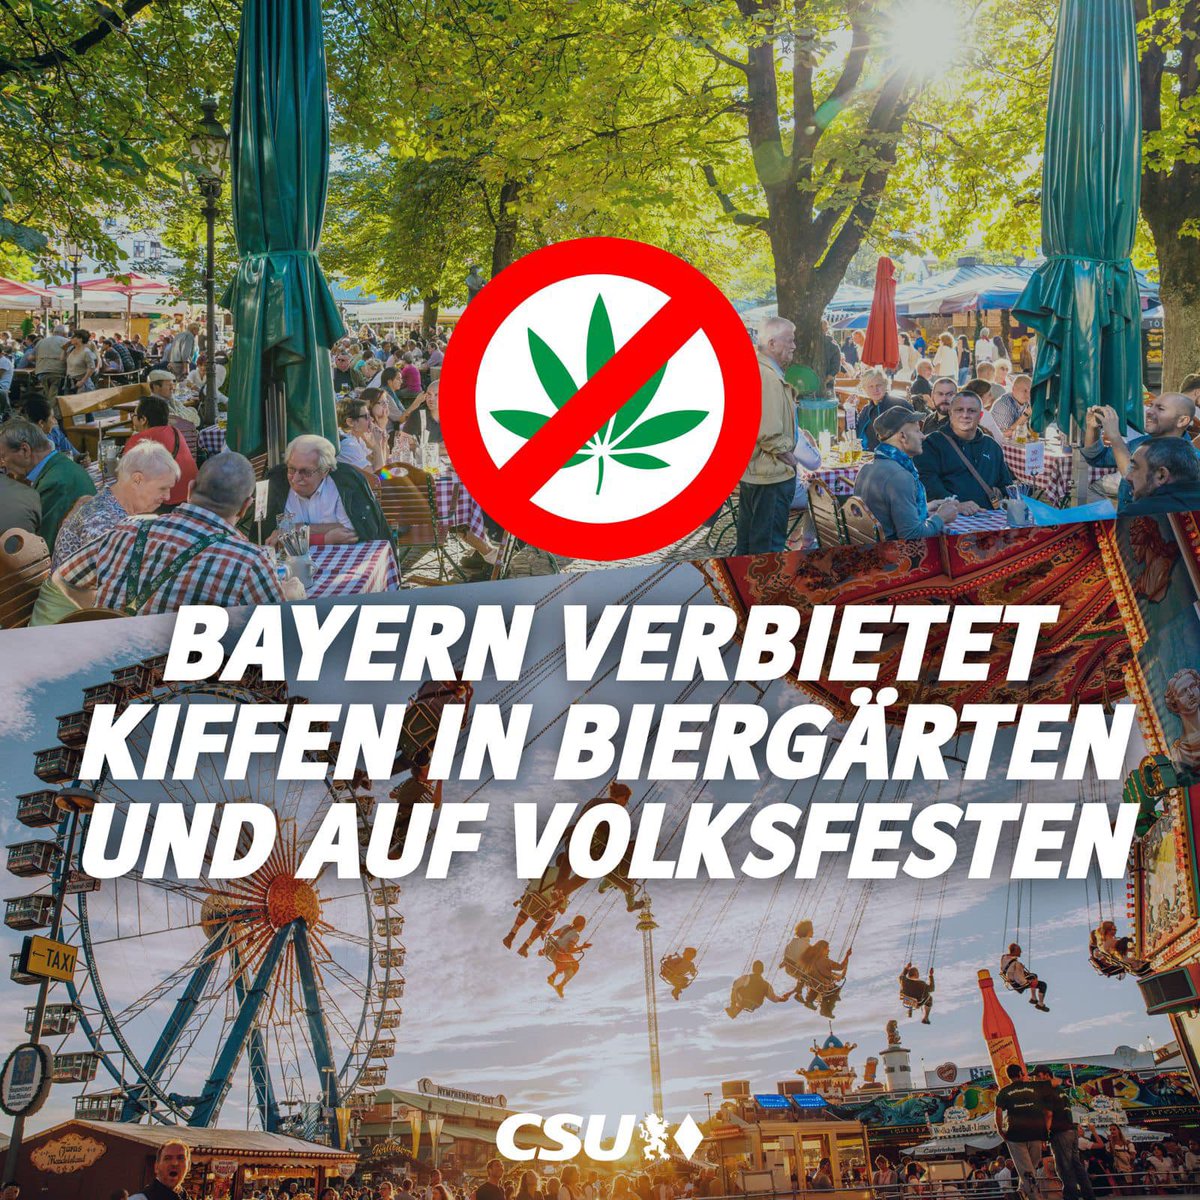 Finde es gut, dass Bayern in der Öffentlichkeit, zB Biergärten, Volksfesten usw., kiffen verbieten will. 

Hoffe, die anderen Bundesländer ziehen nach. 

Denn wer hat schon Lust, in einer Marihuana Wolke rumzudümbeln. 🤢